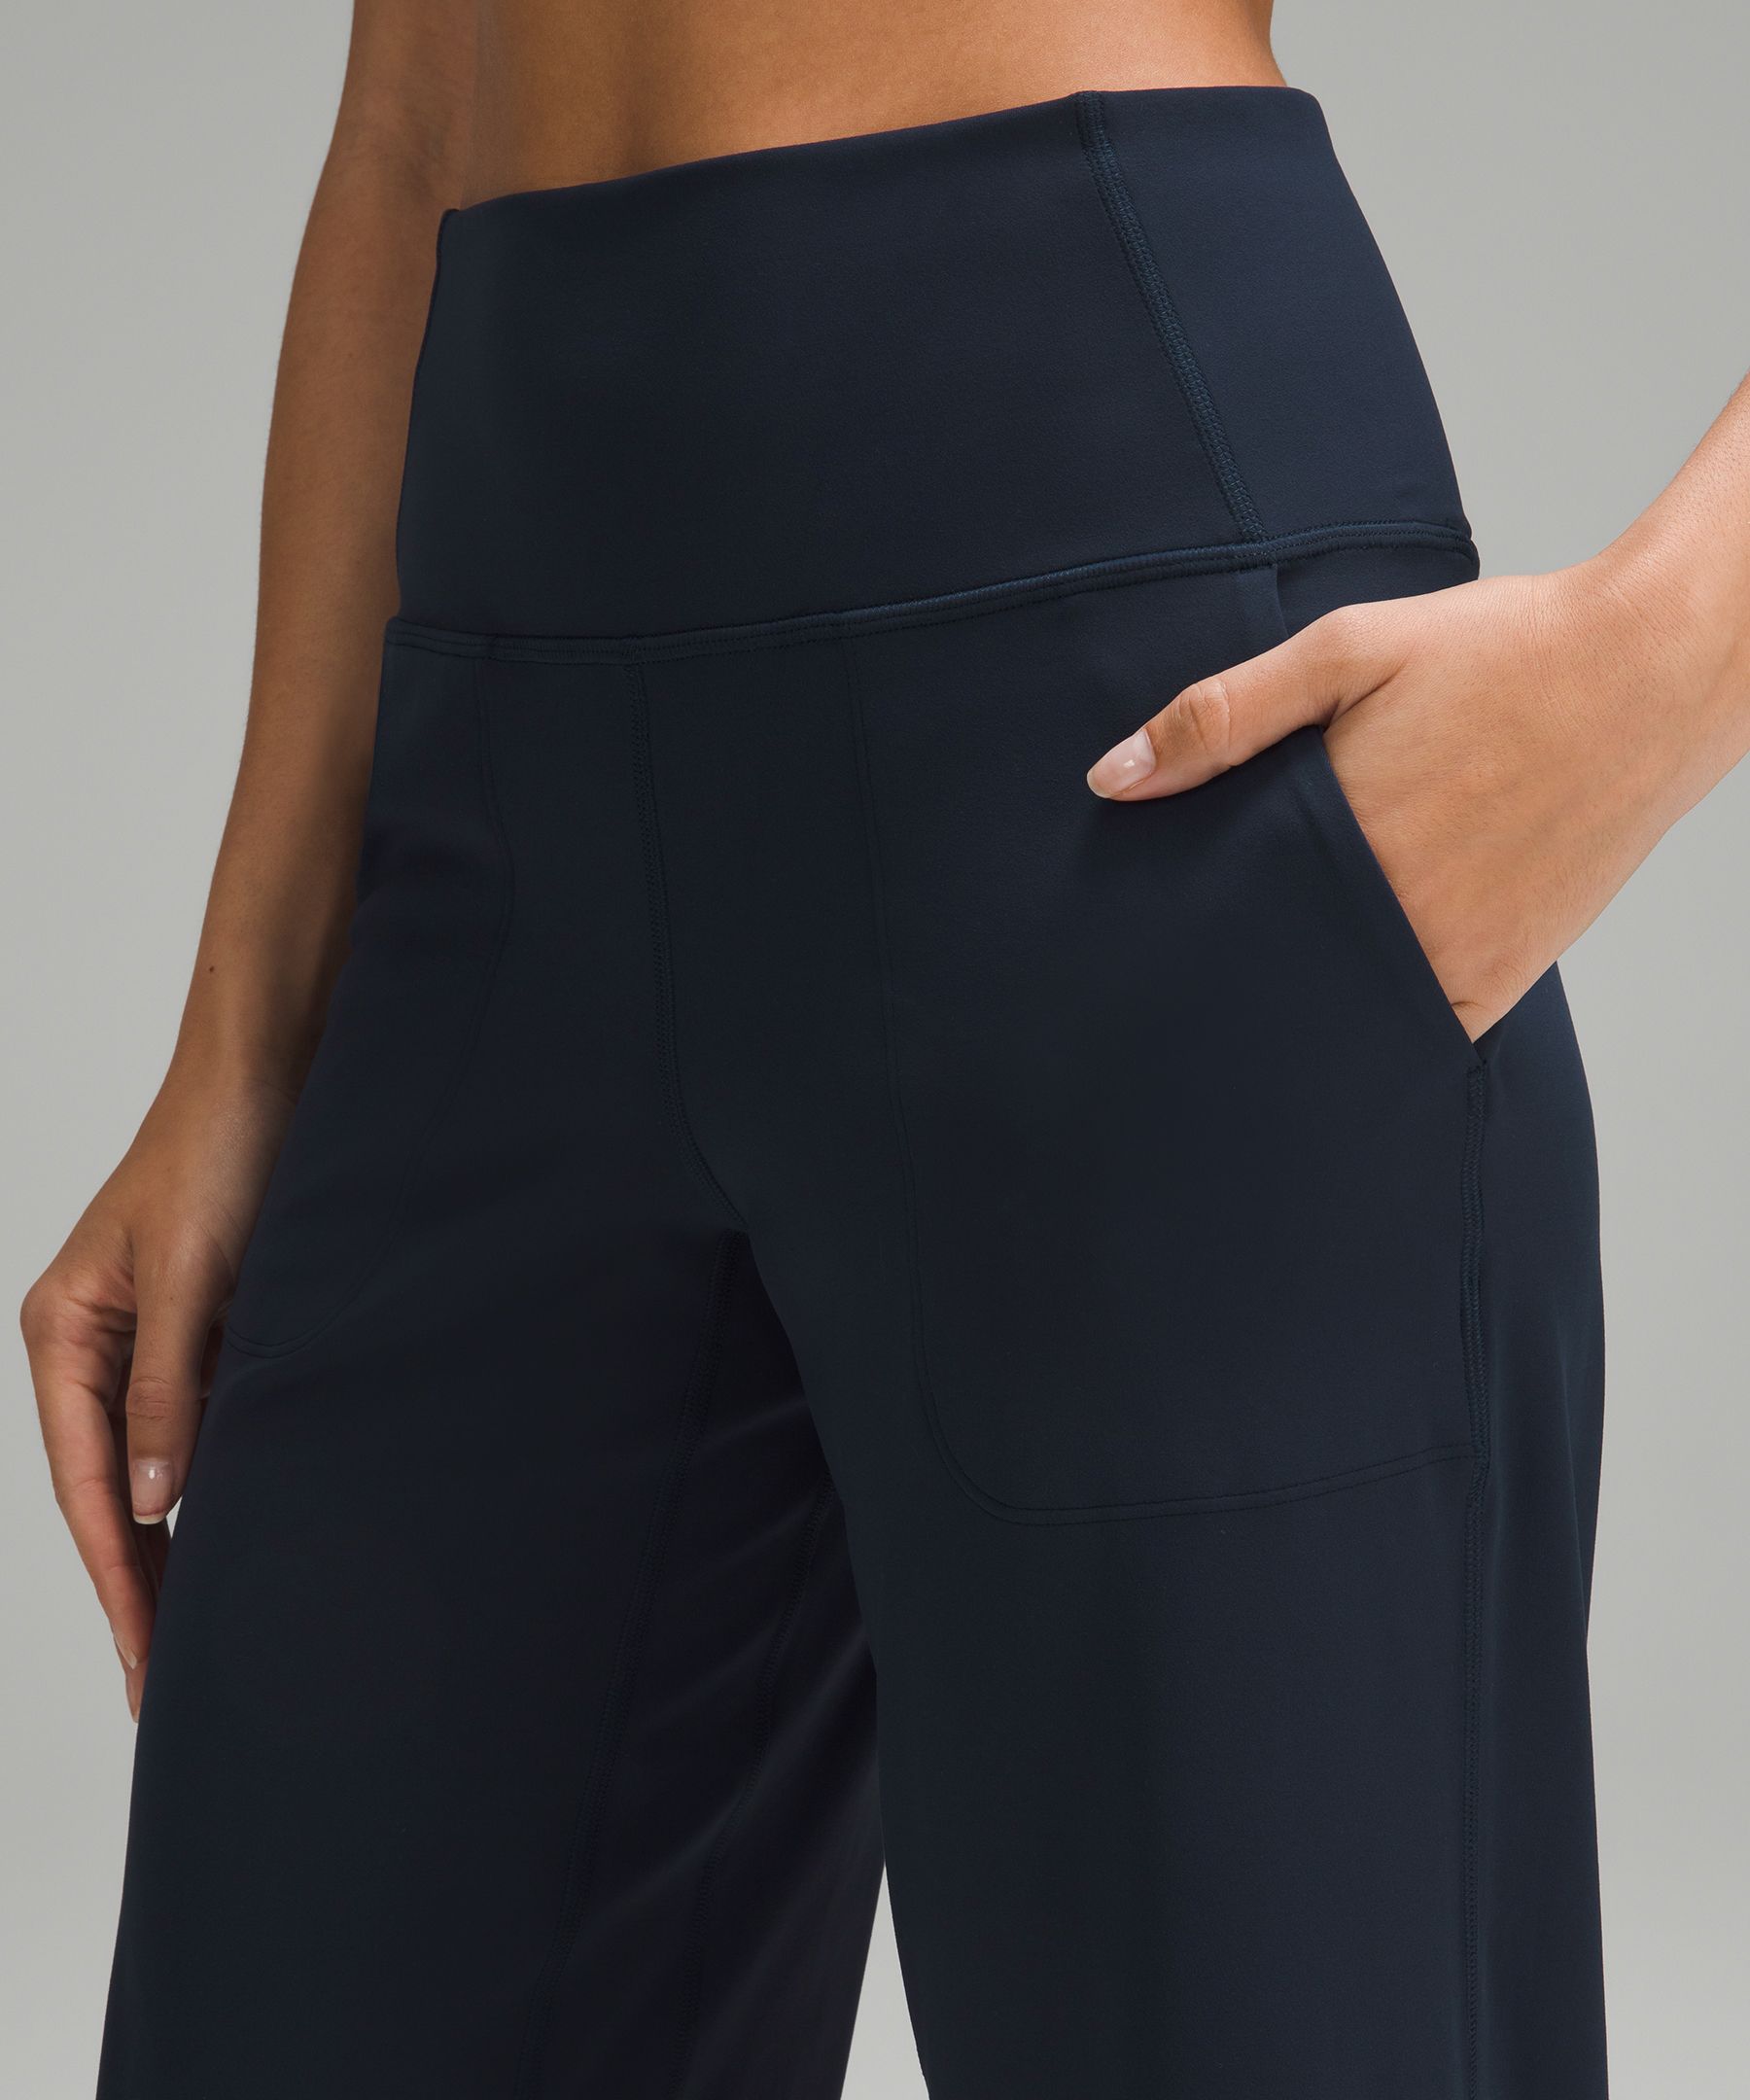 Lululemon Size 6 Cropped Pants Black Drawstring Elastic Waist